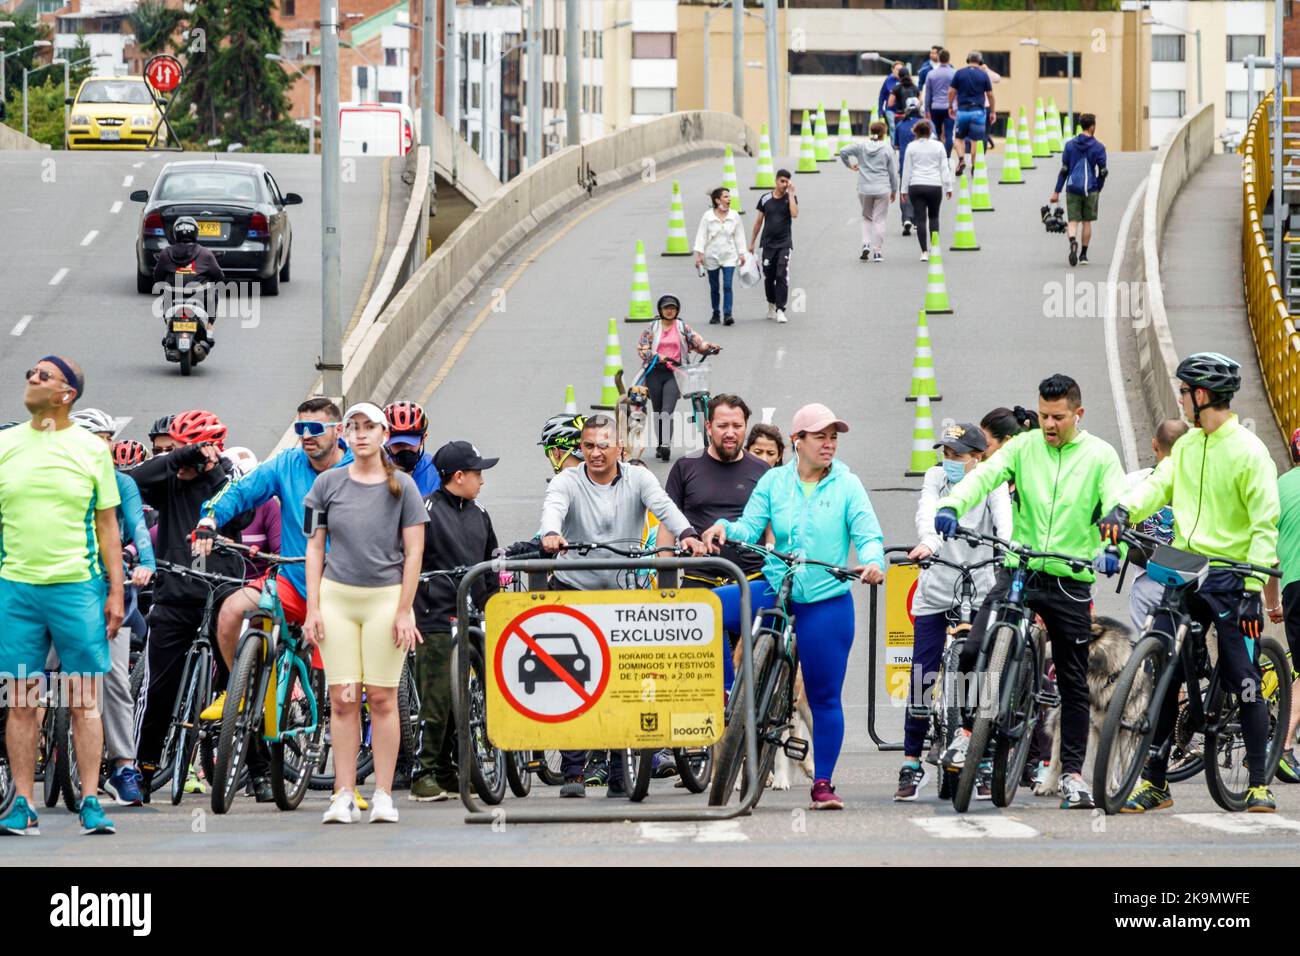 Bogota Colombie,Usaquen Puente Avenida Calle 116 traversée de l'Avenida Carrera 7,Ciclovia événement du dimanche bicyclette cycliste vélo vélo vélo vélo ridin Banque D'Images